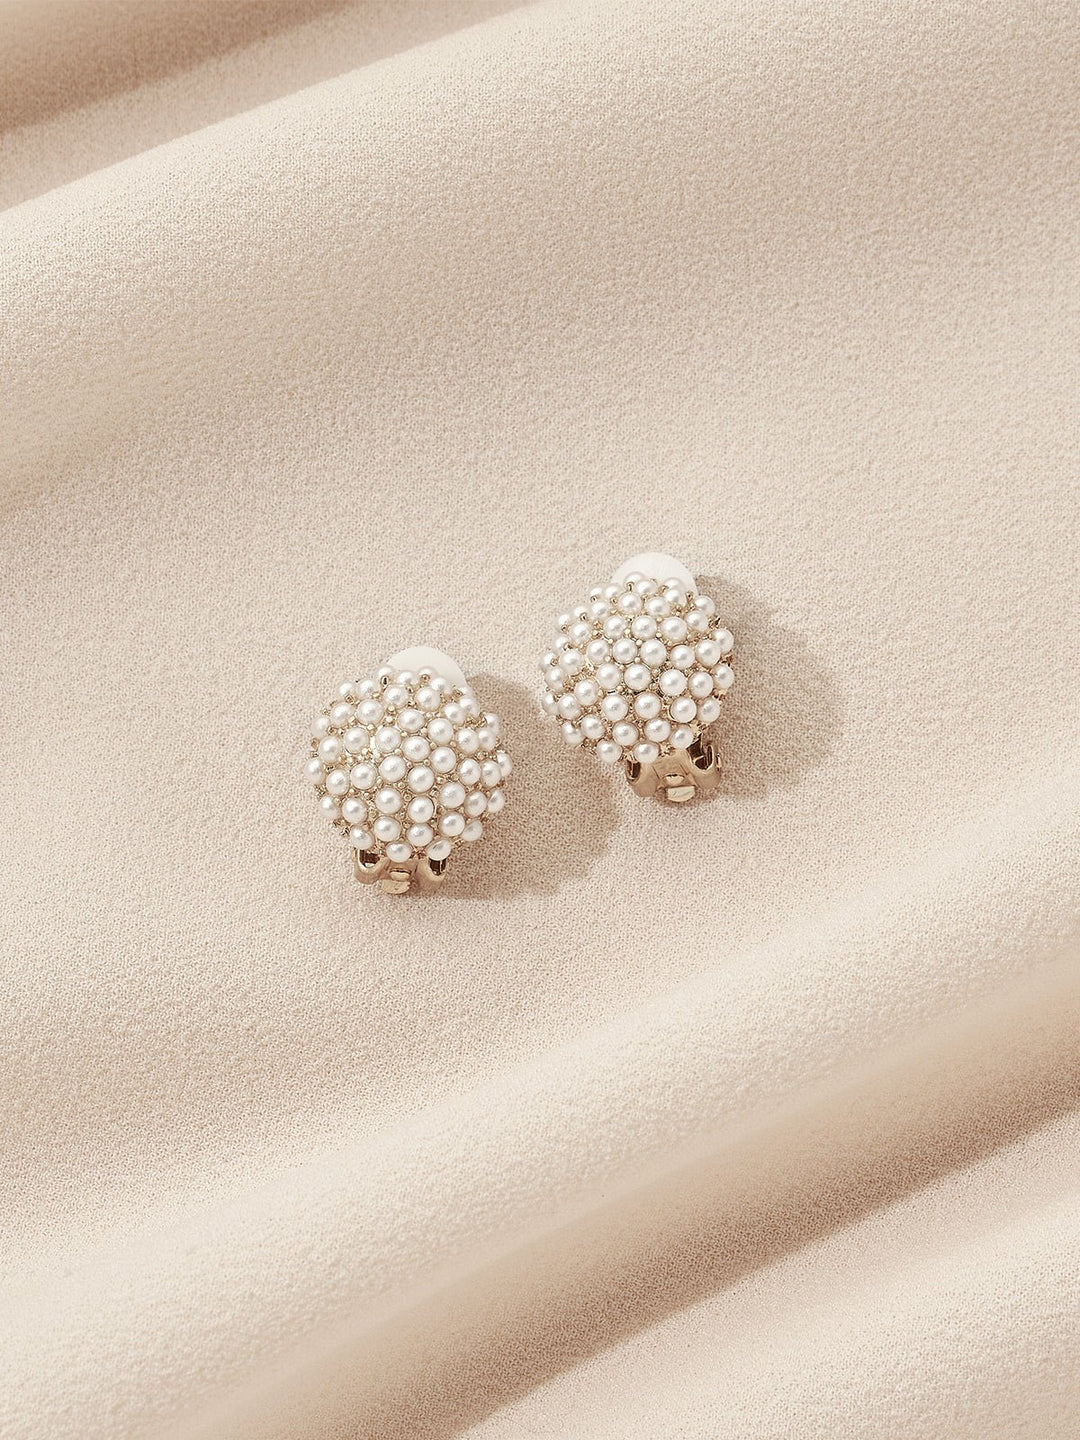 CHANEL Triple Pearl Earring Studs  Pearl earrings designs, Pearl stud  earrings, Chanel pearl earrings